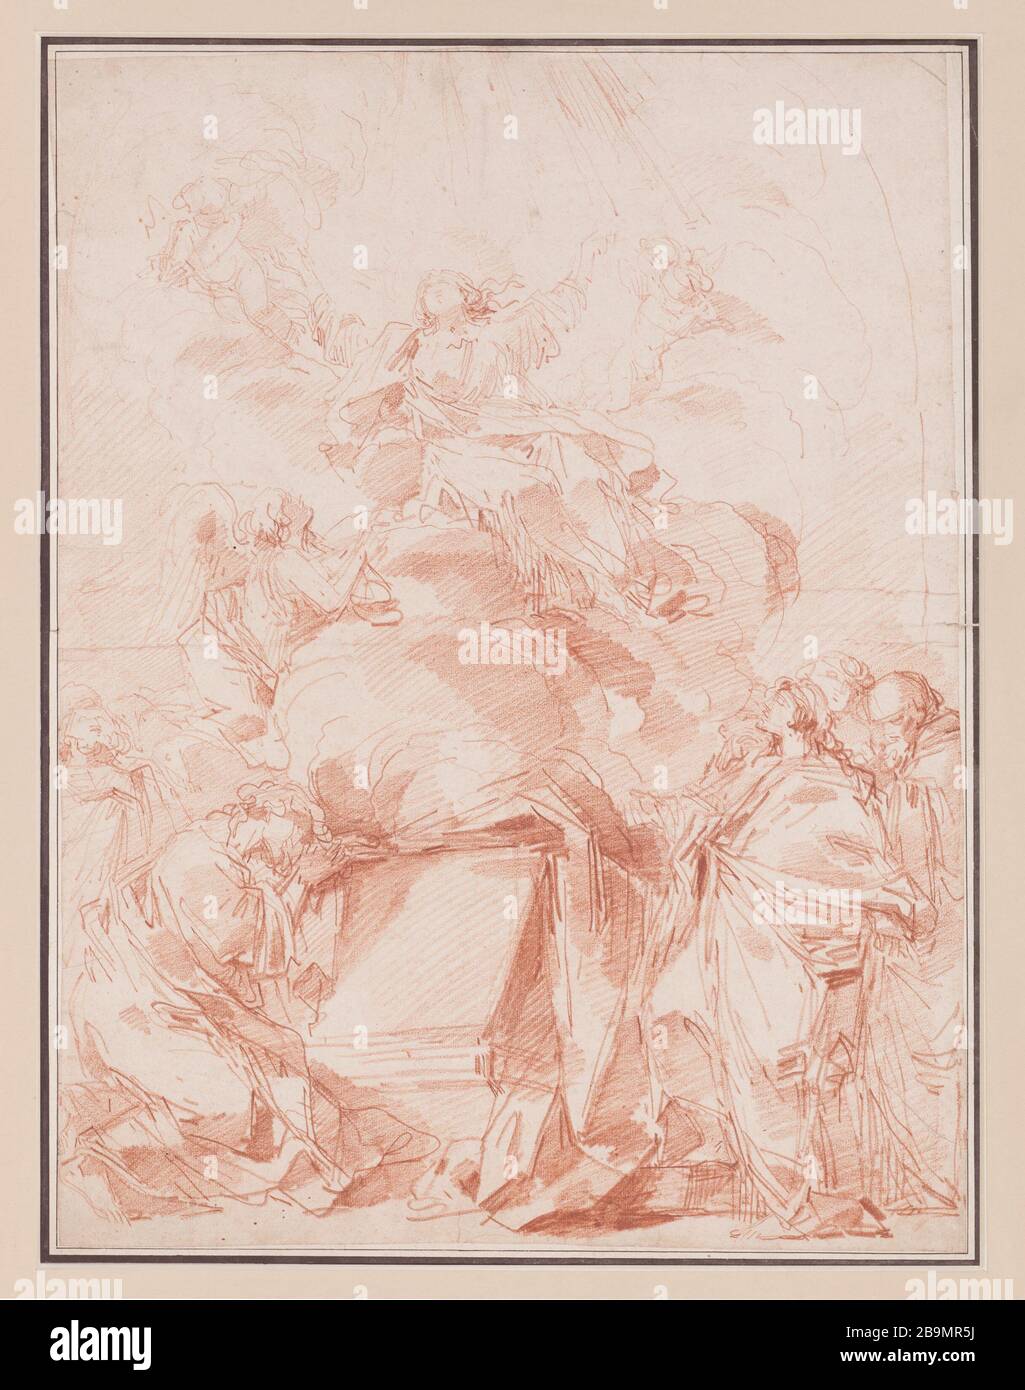 L'Assunzione della Vergine André le Brun (1757-1811), scultore. "L'assomption de la Vierge". Sanguine sur papier. 1759-1768. Musée des Beaux-Arts de la Ville de Paris, Petit Palais. Foto Stock